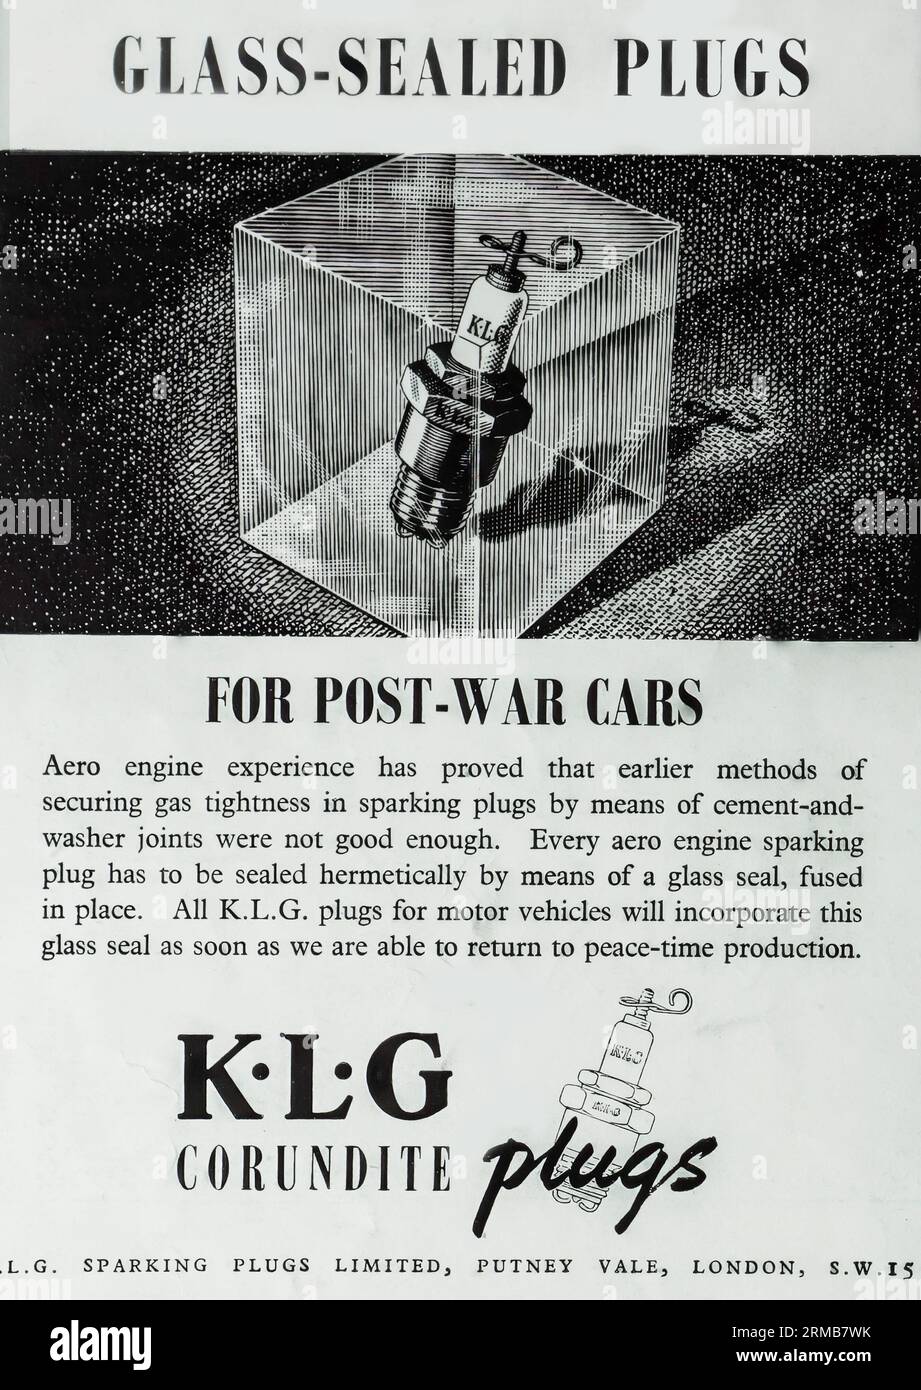 Eine Werbung von 1941 für K L G Corundite Plugs, hergestellt von L.G. Sparking Plugs Limited von Putney. In der Werbung heißt es, dass alle Zündkerzen von Triebwerken hermetisch mit einer Glasdichtung abgedichtet werden müssen. Sie verspricht weiter, dass alle KLG-Stecker für Kraftfahrzeuge diese Glasdichtung enthalten, sobald sie in der Lage sind, wieder in die Friedenszeiterzeugung zurückzukehren. Stockfoto